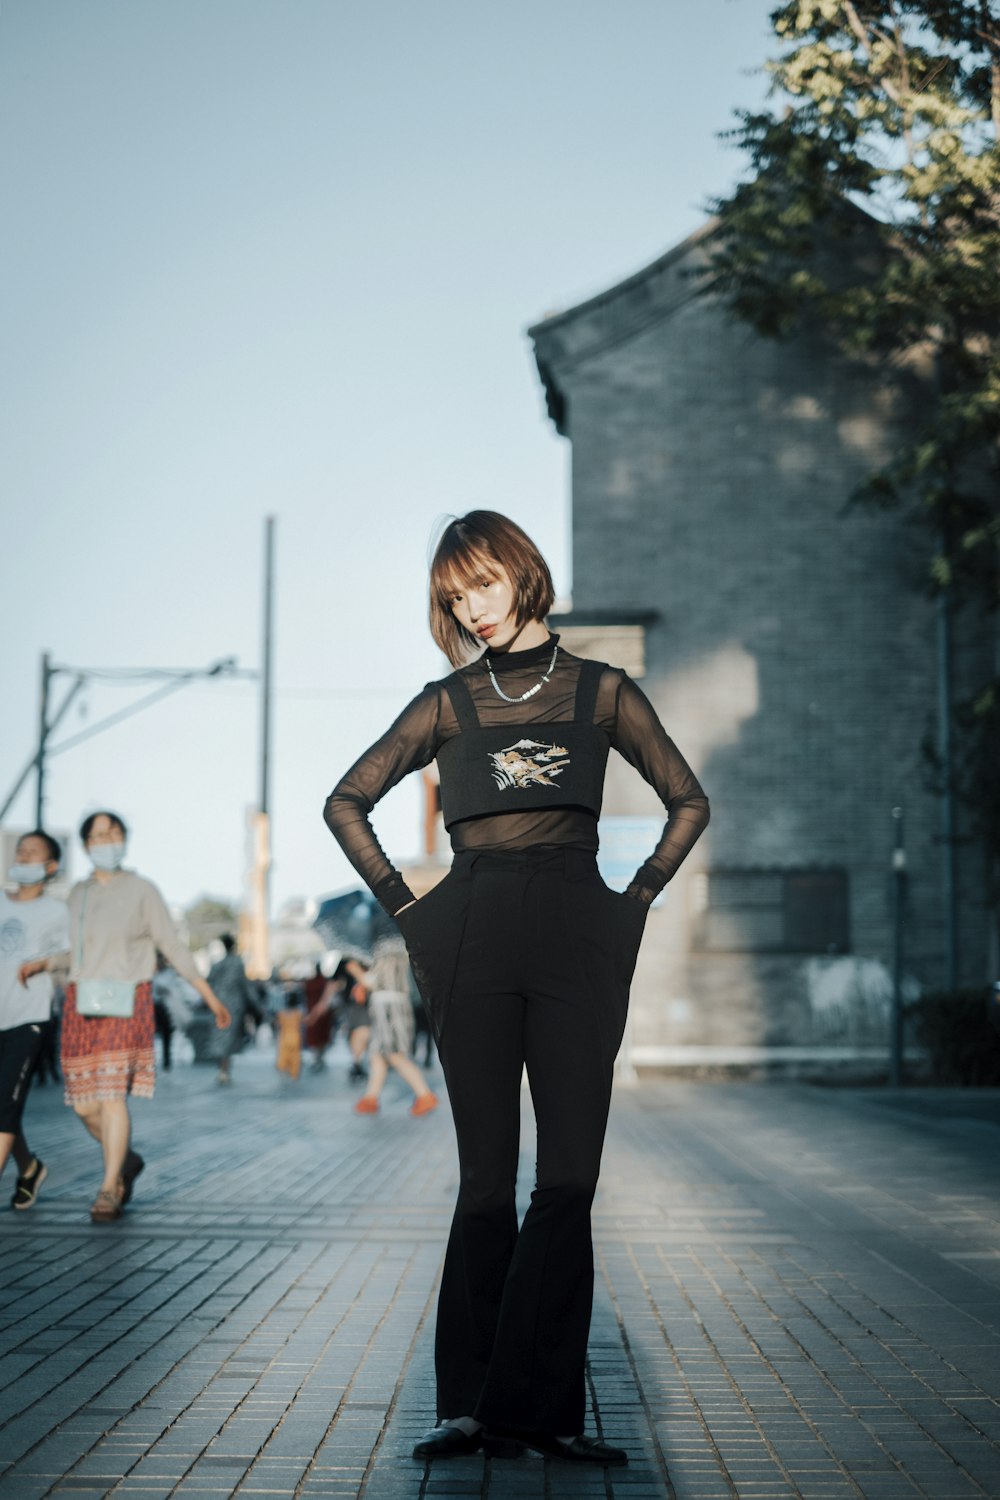 Una donna in un vestito nero in piedi su un marciapiede